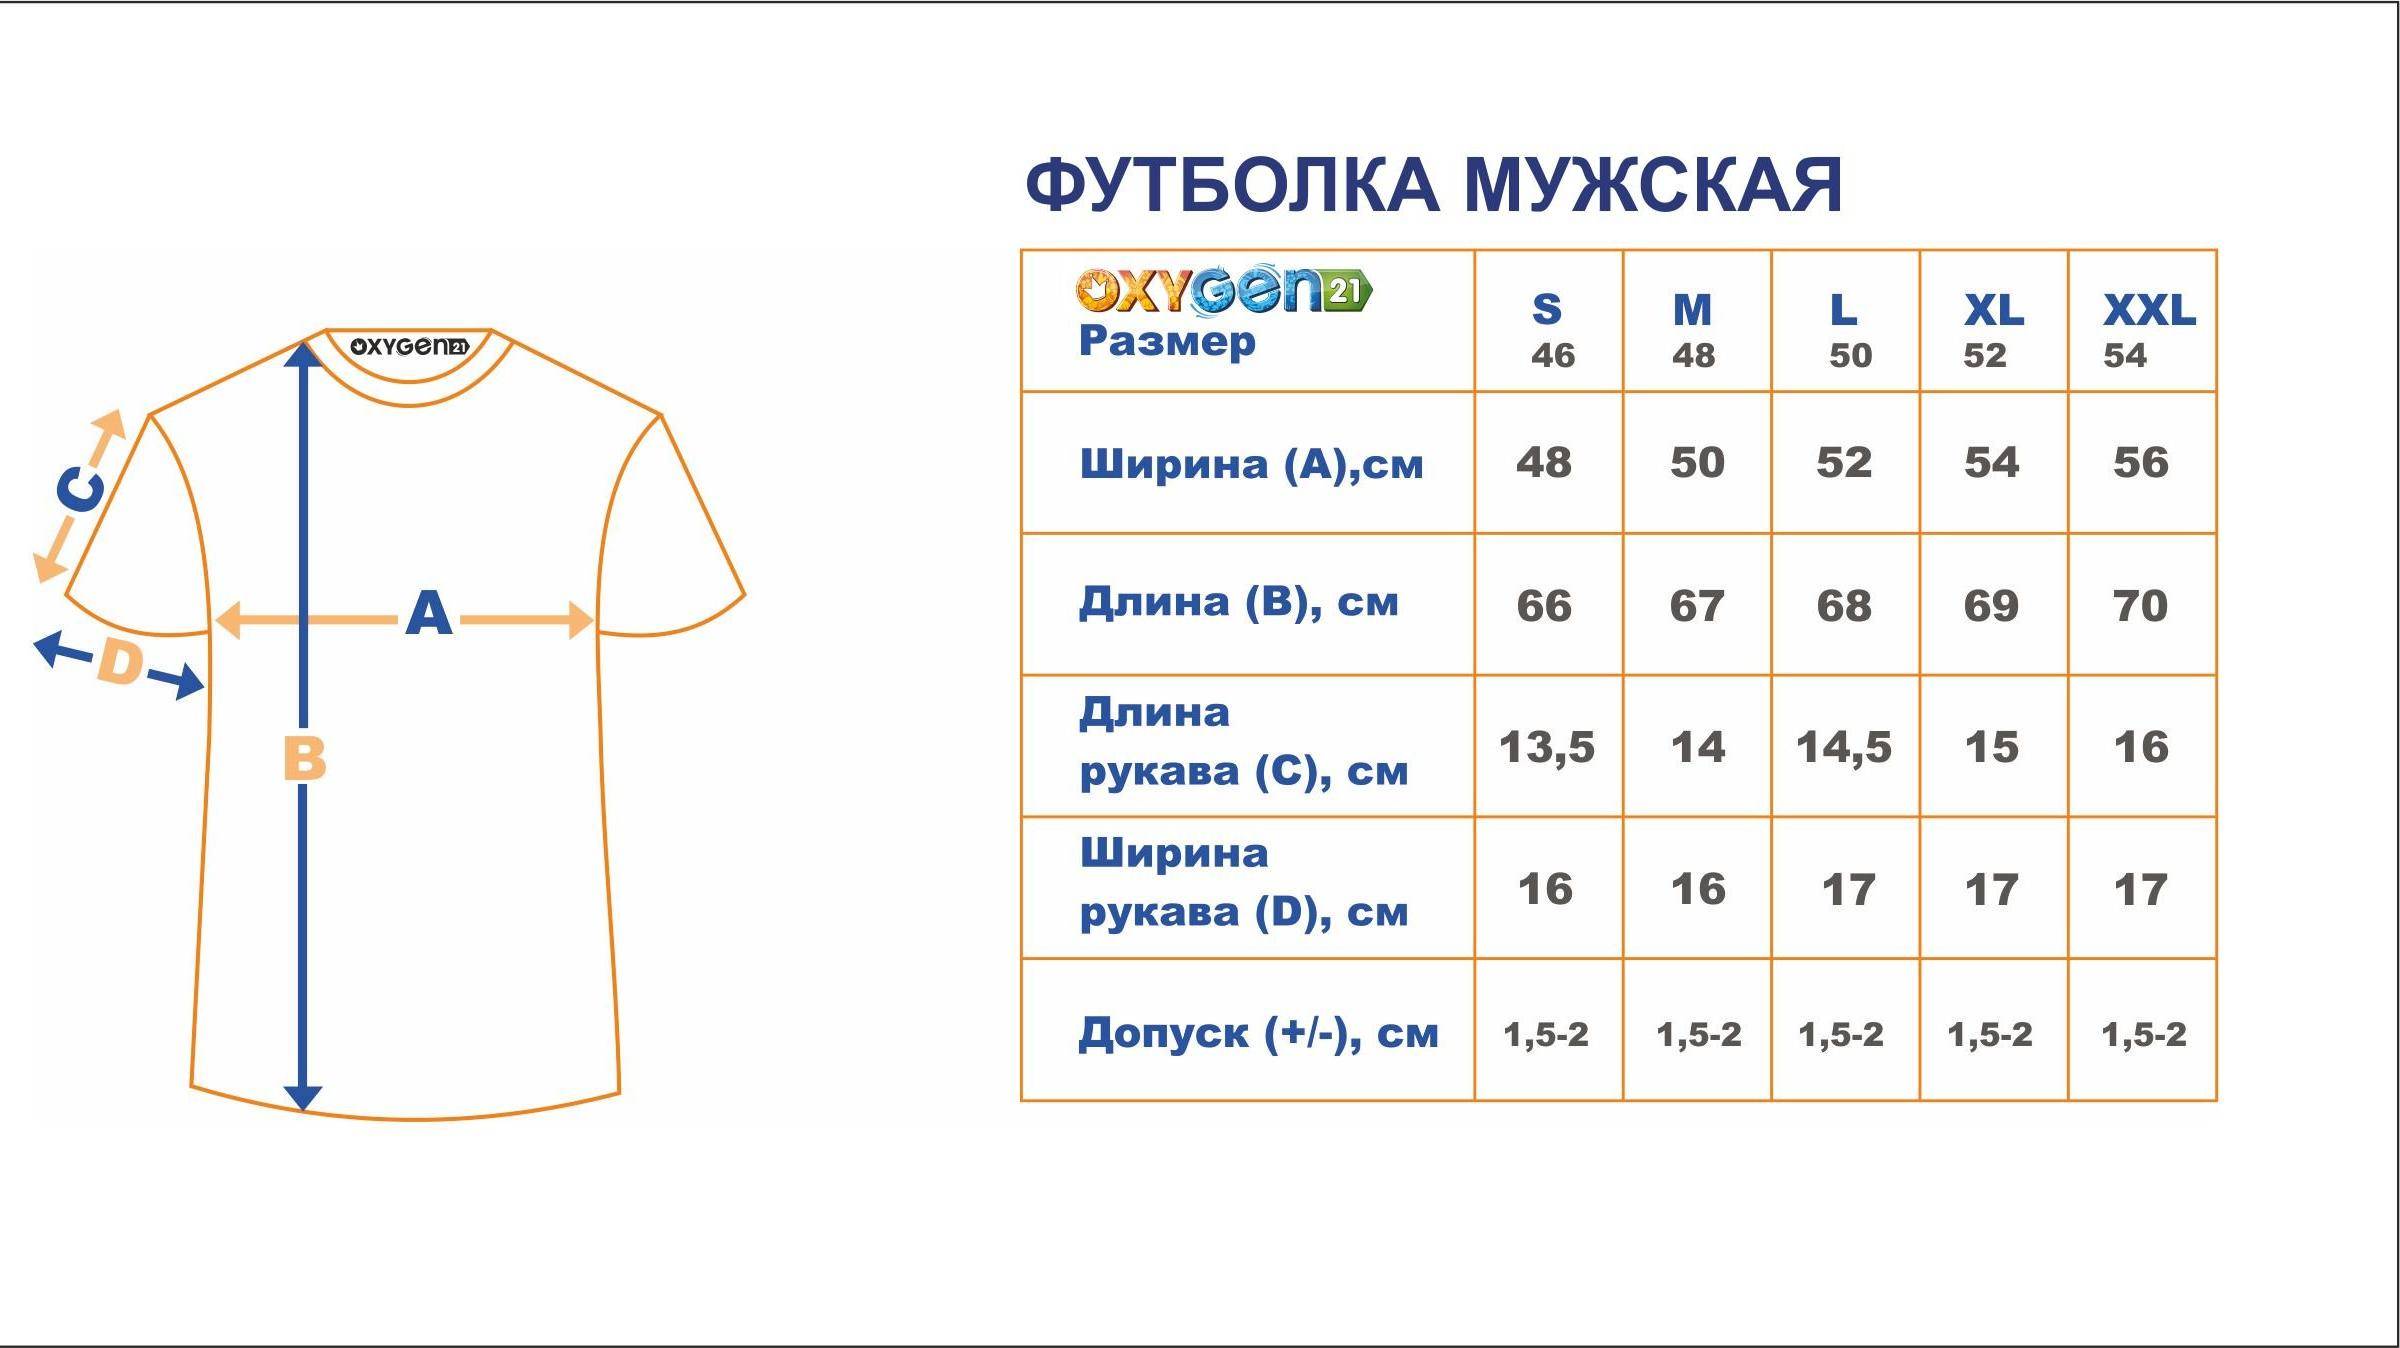 Ширина перевод. Размеры футболок. Сетка размеров футболок. Размеры футболок мужских. Сетка размеров футболок для мужчин.